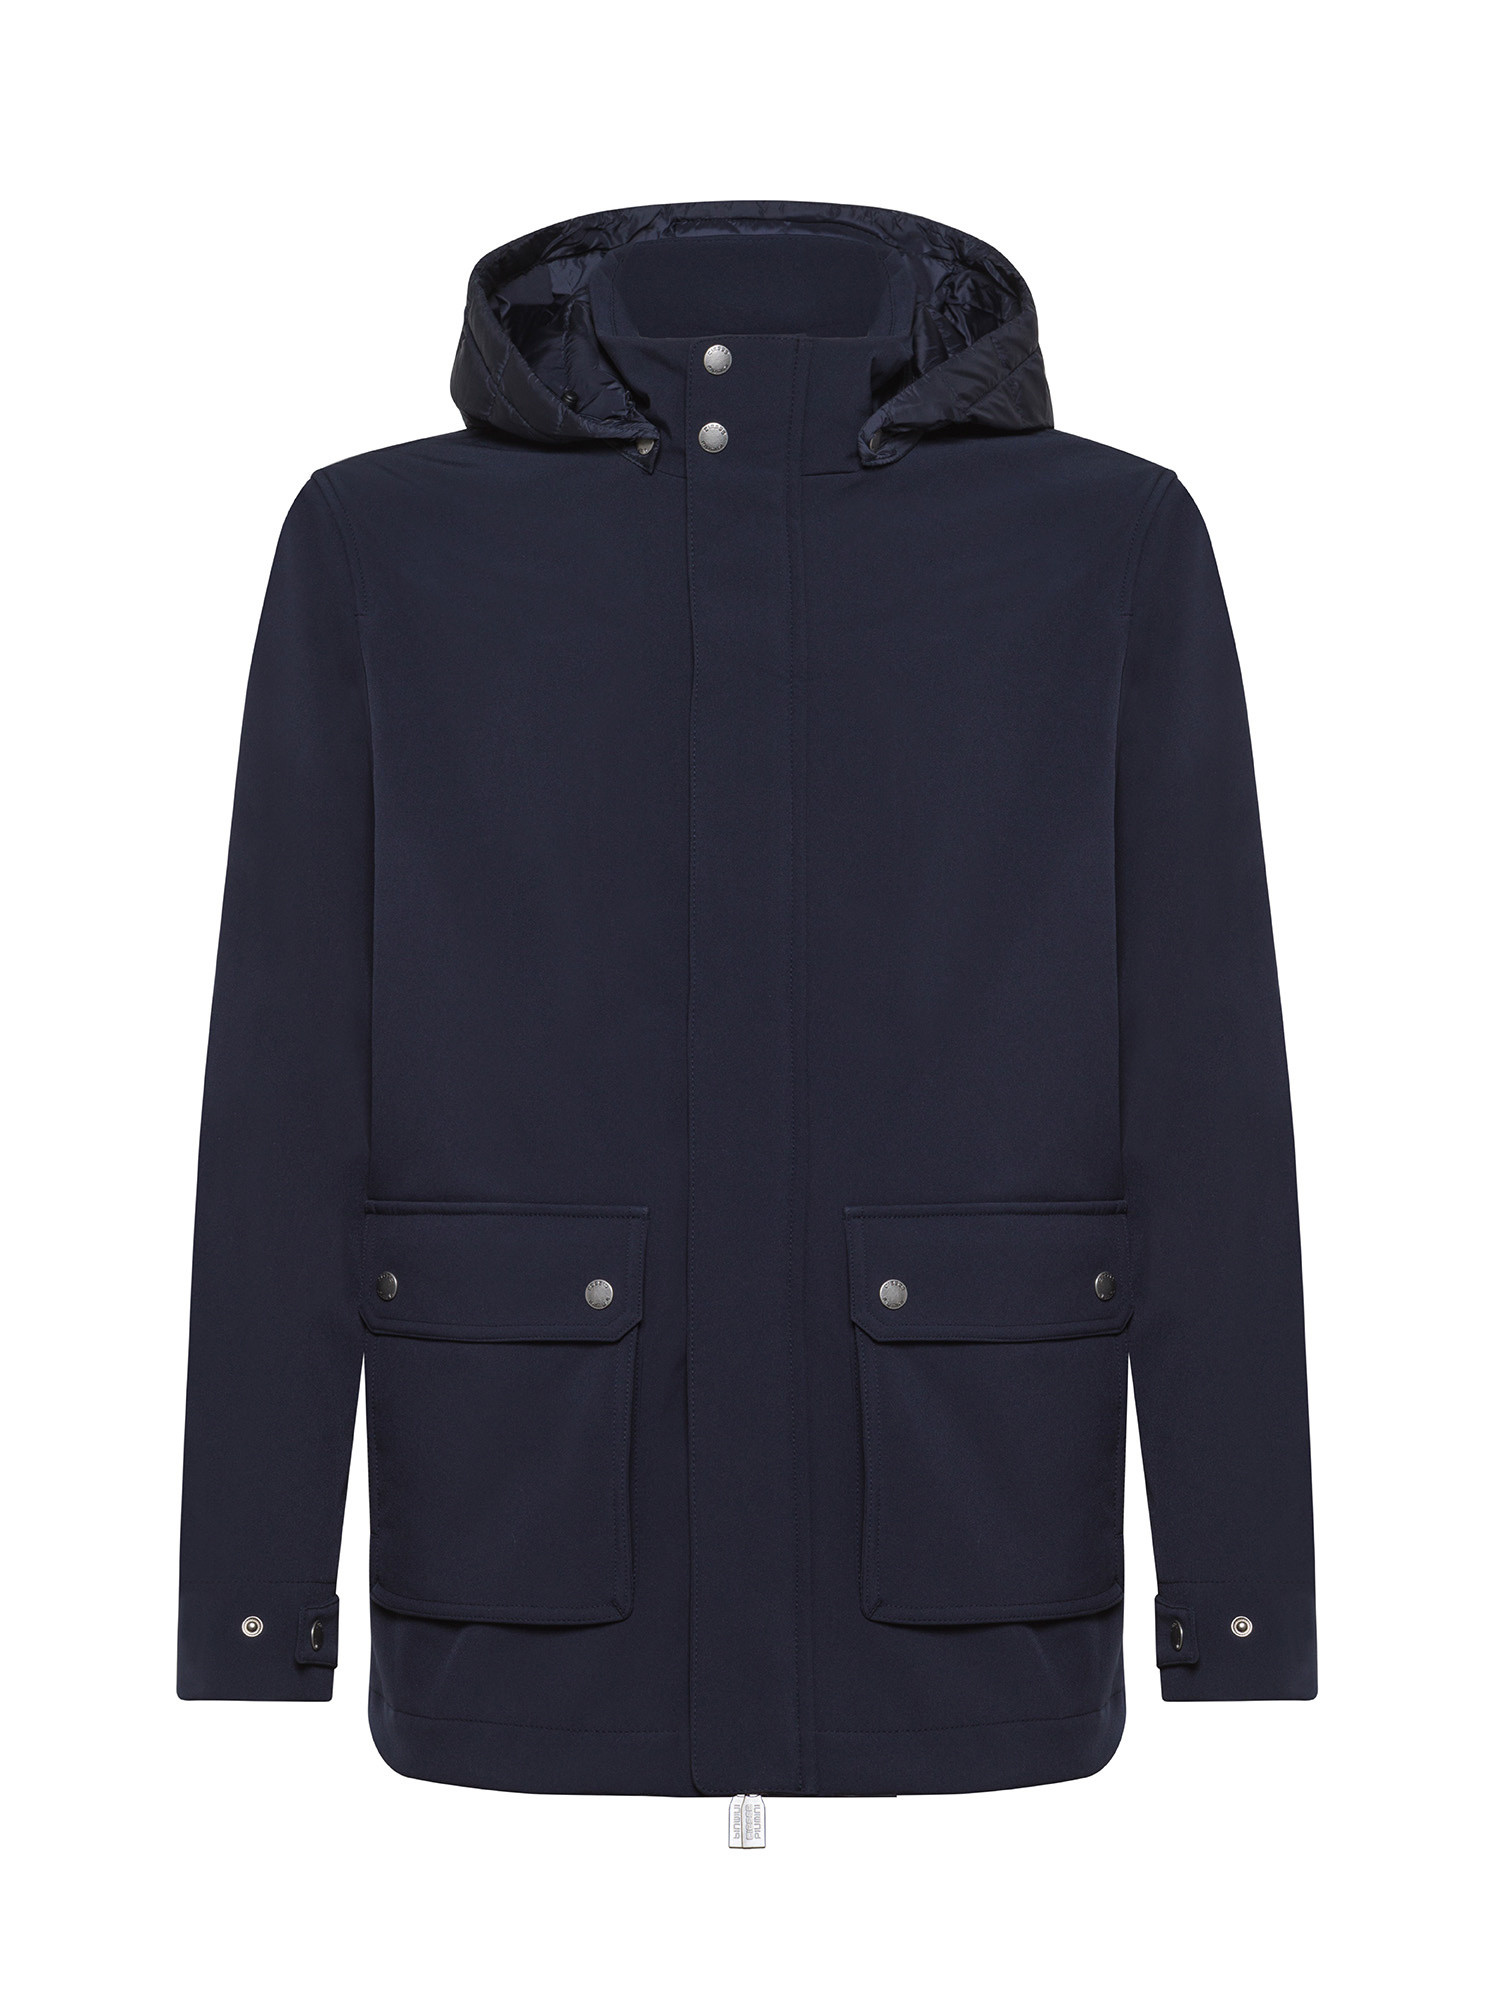 Ciesse Piumini - Jacket with hood, Dark Blue, large image number 0